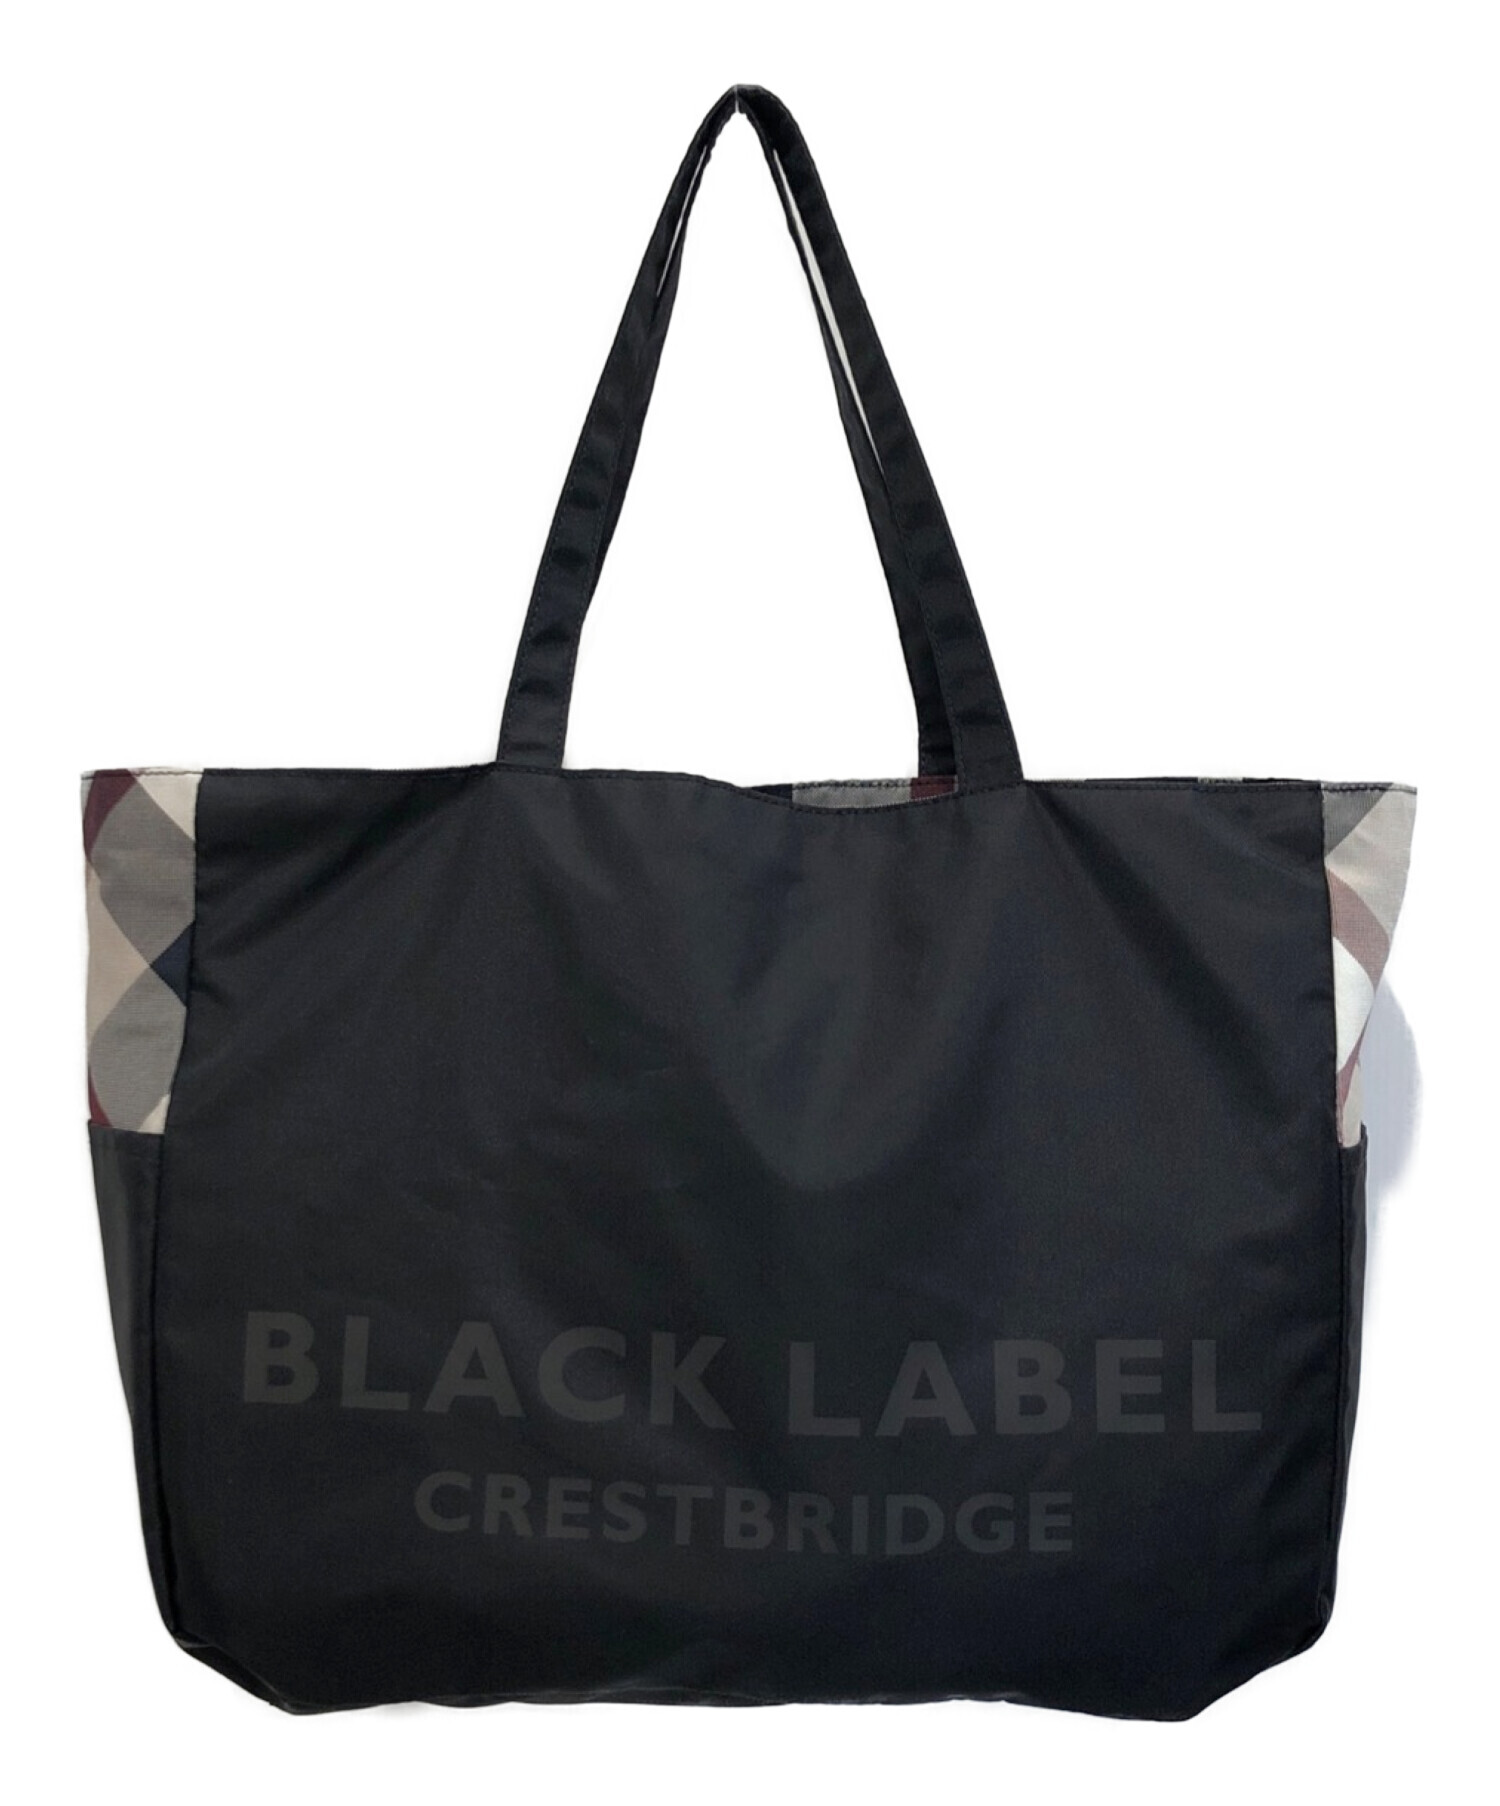 BLACK LABEL CRESTBRIDGE (ブラックレーベル クレストブリッジ) リバーシブルトートバッグ マルチカラー